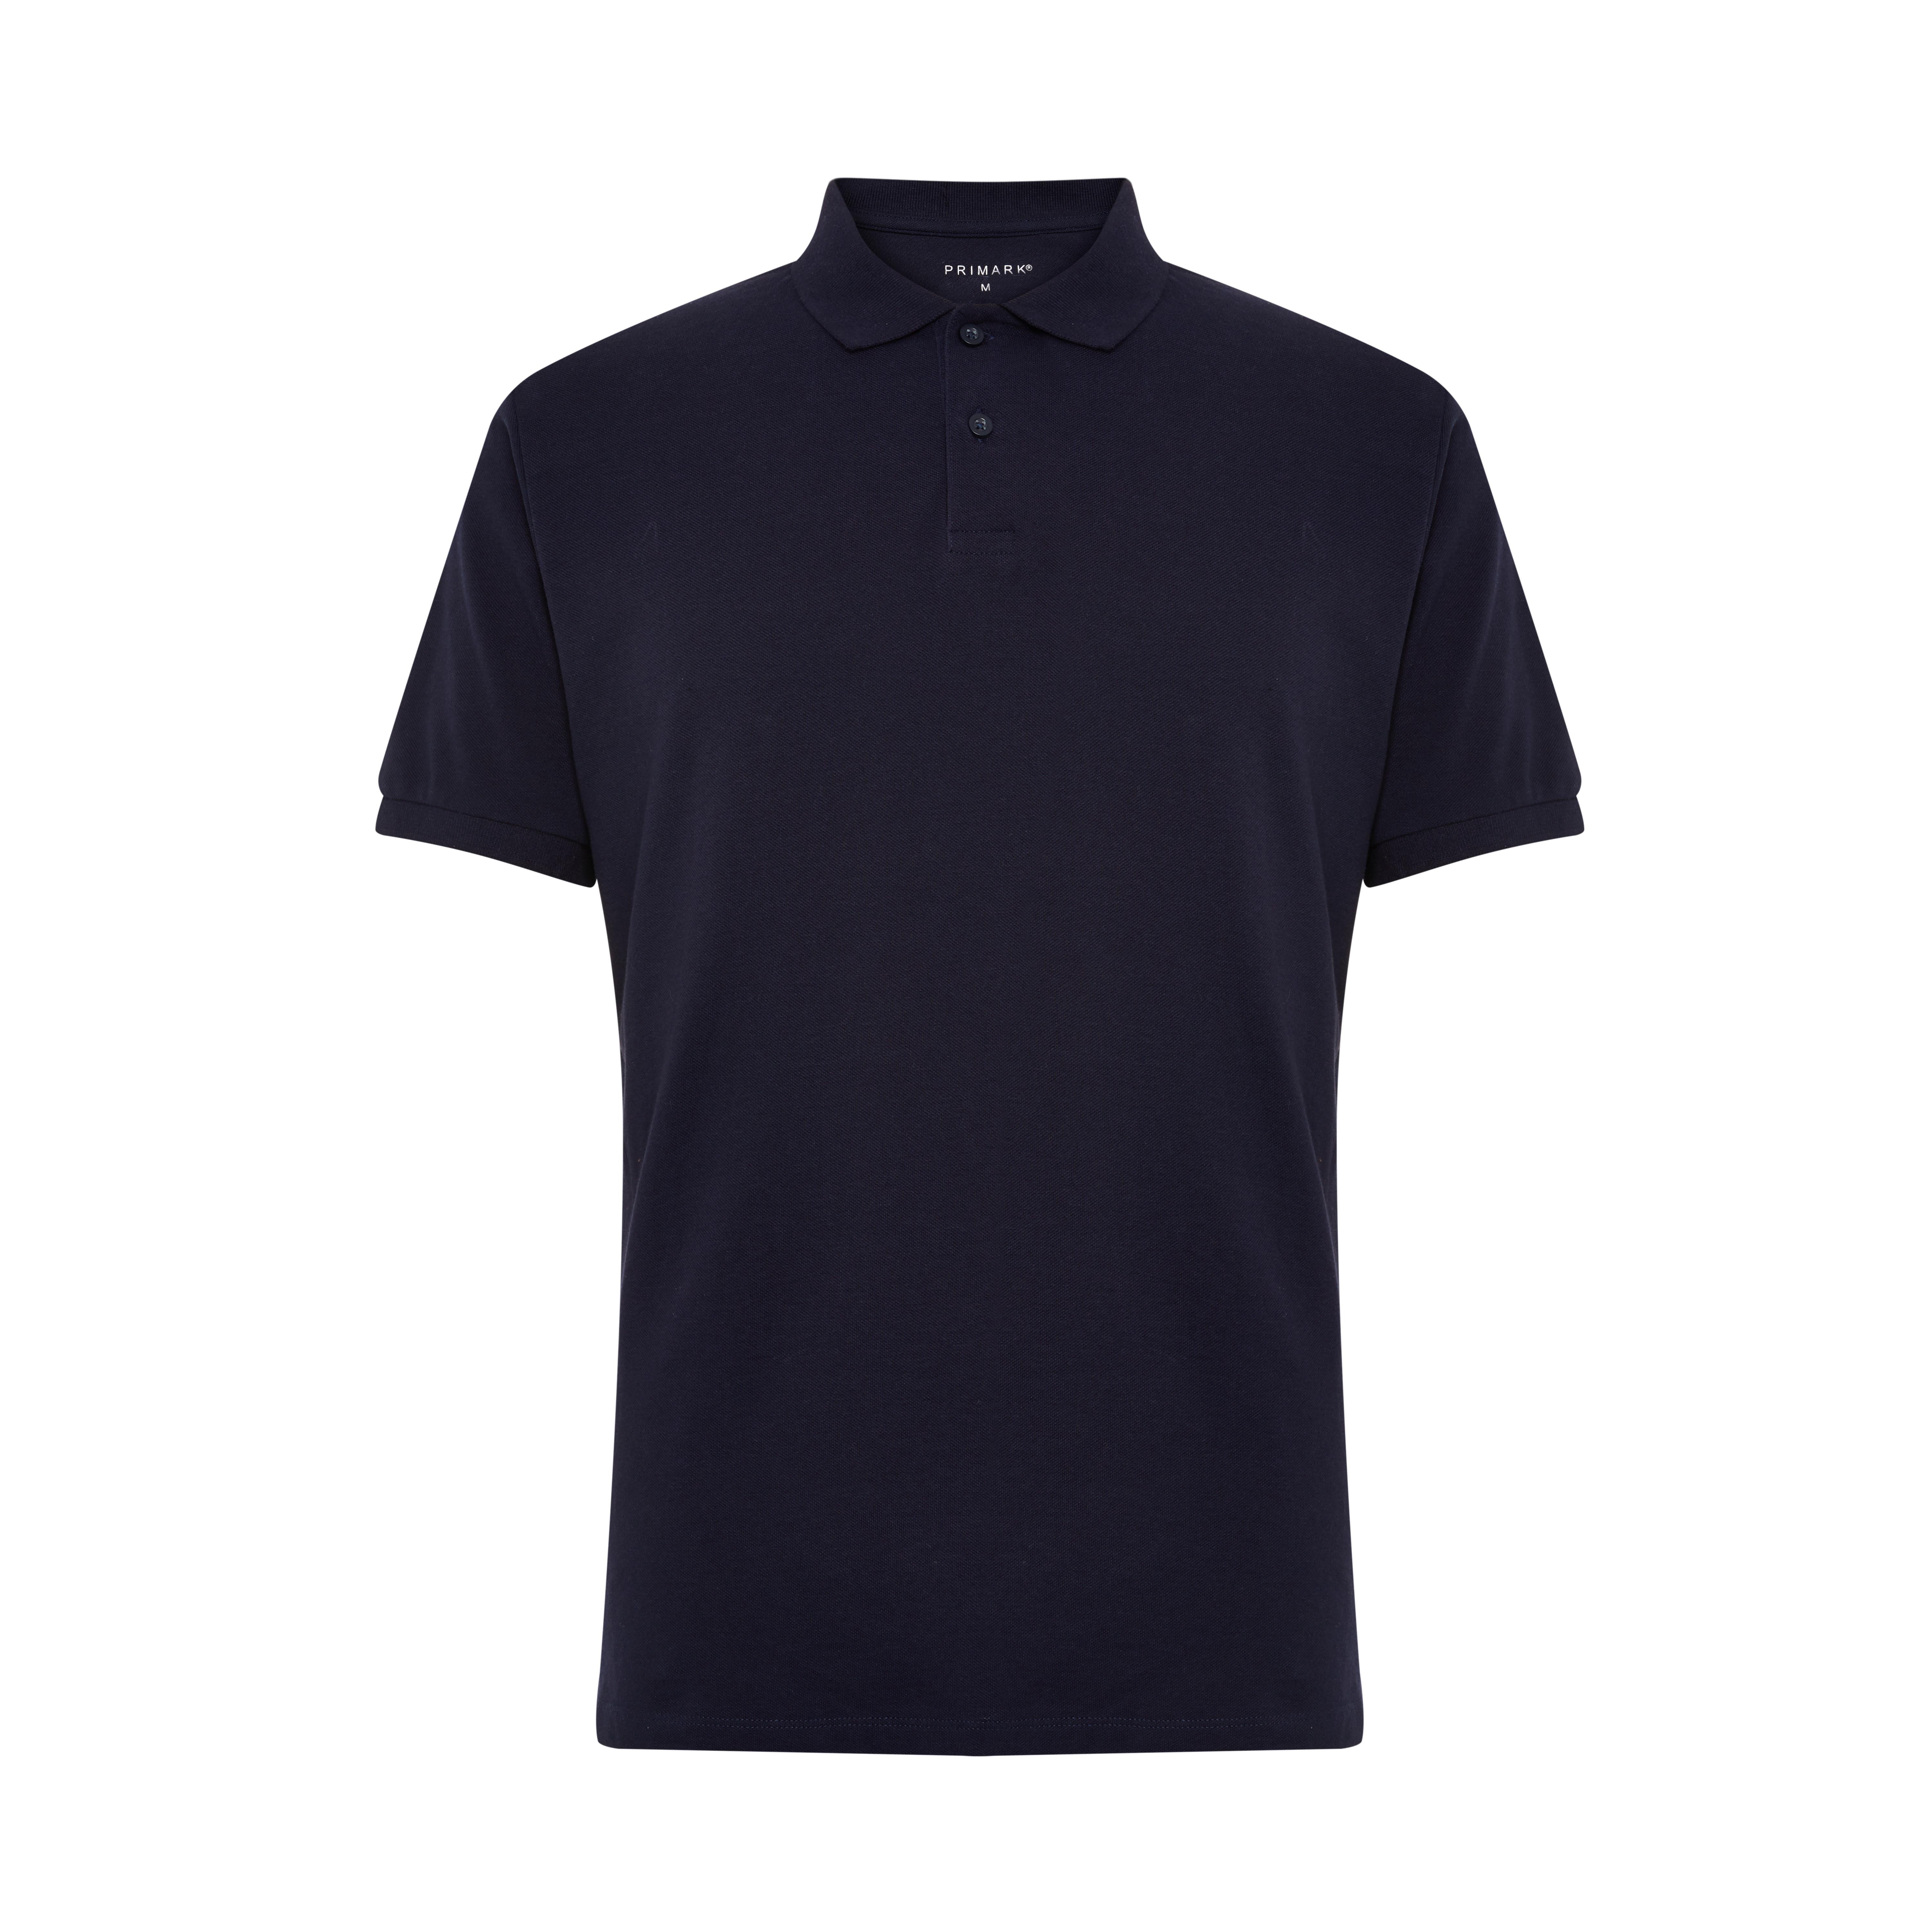 Navy Basic Piqué Polo | Men's Polo Shirts | Men's T-shirts & Tops | Men ...